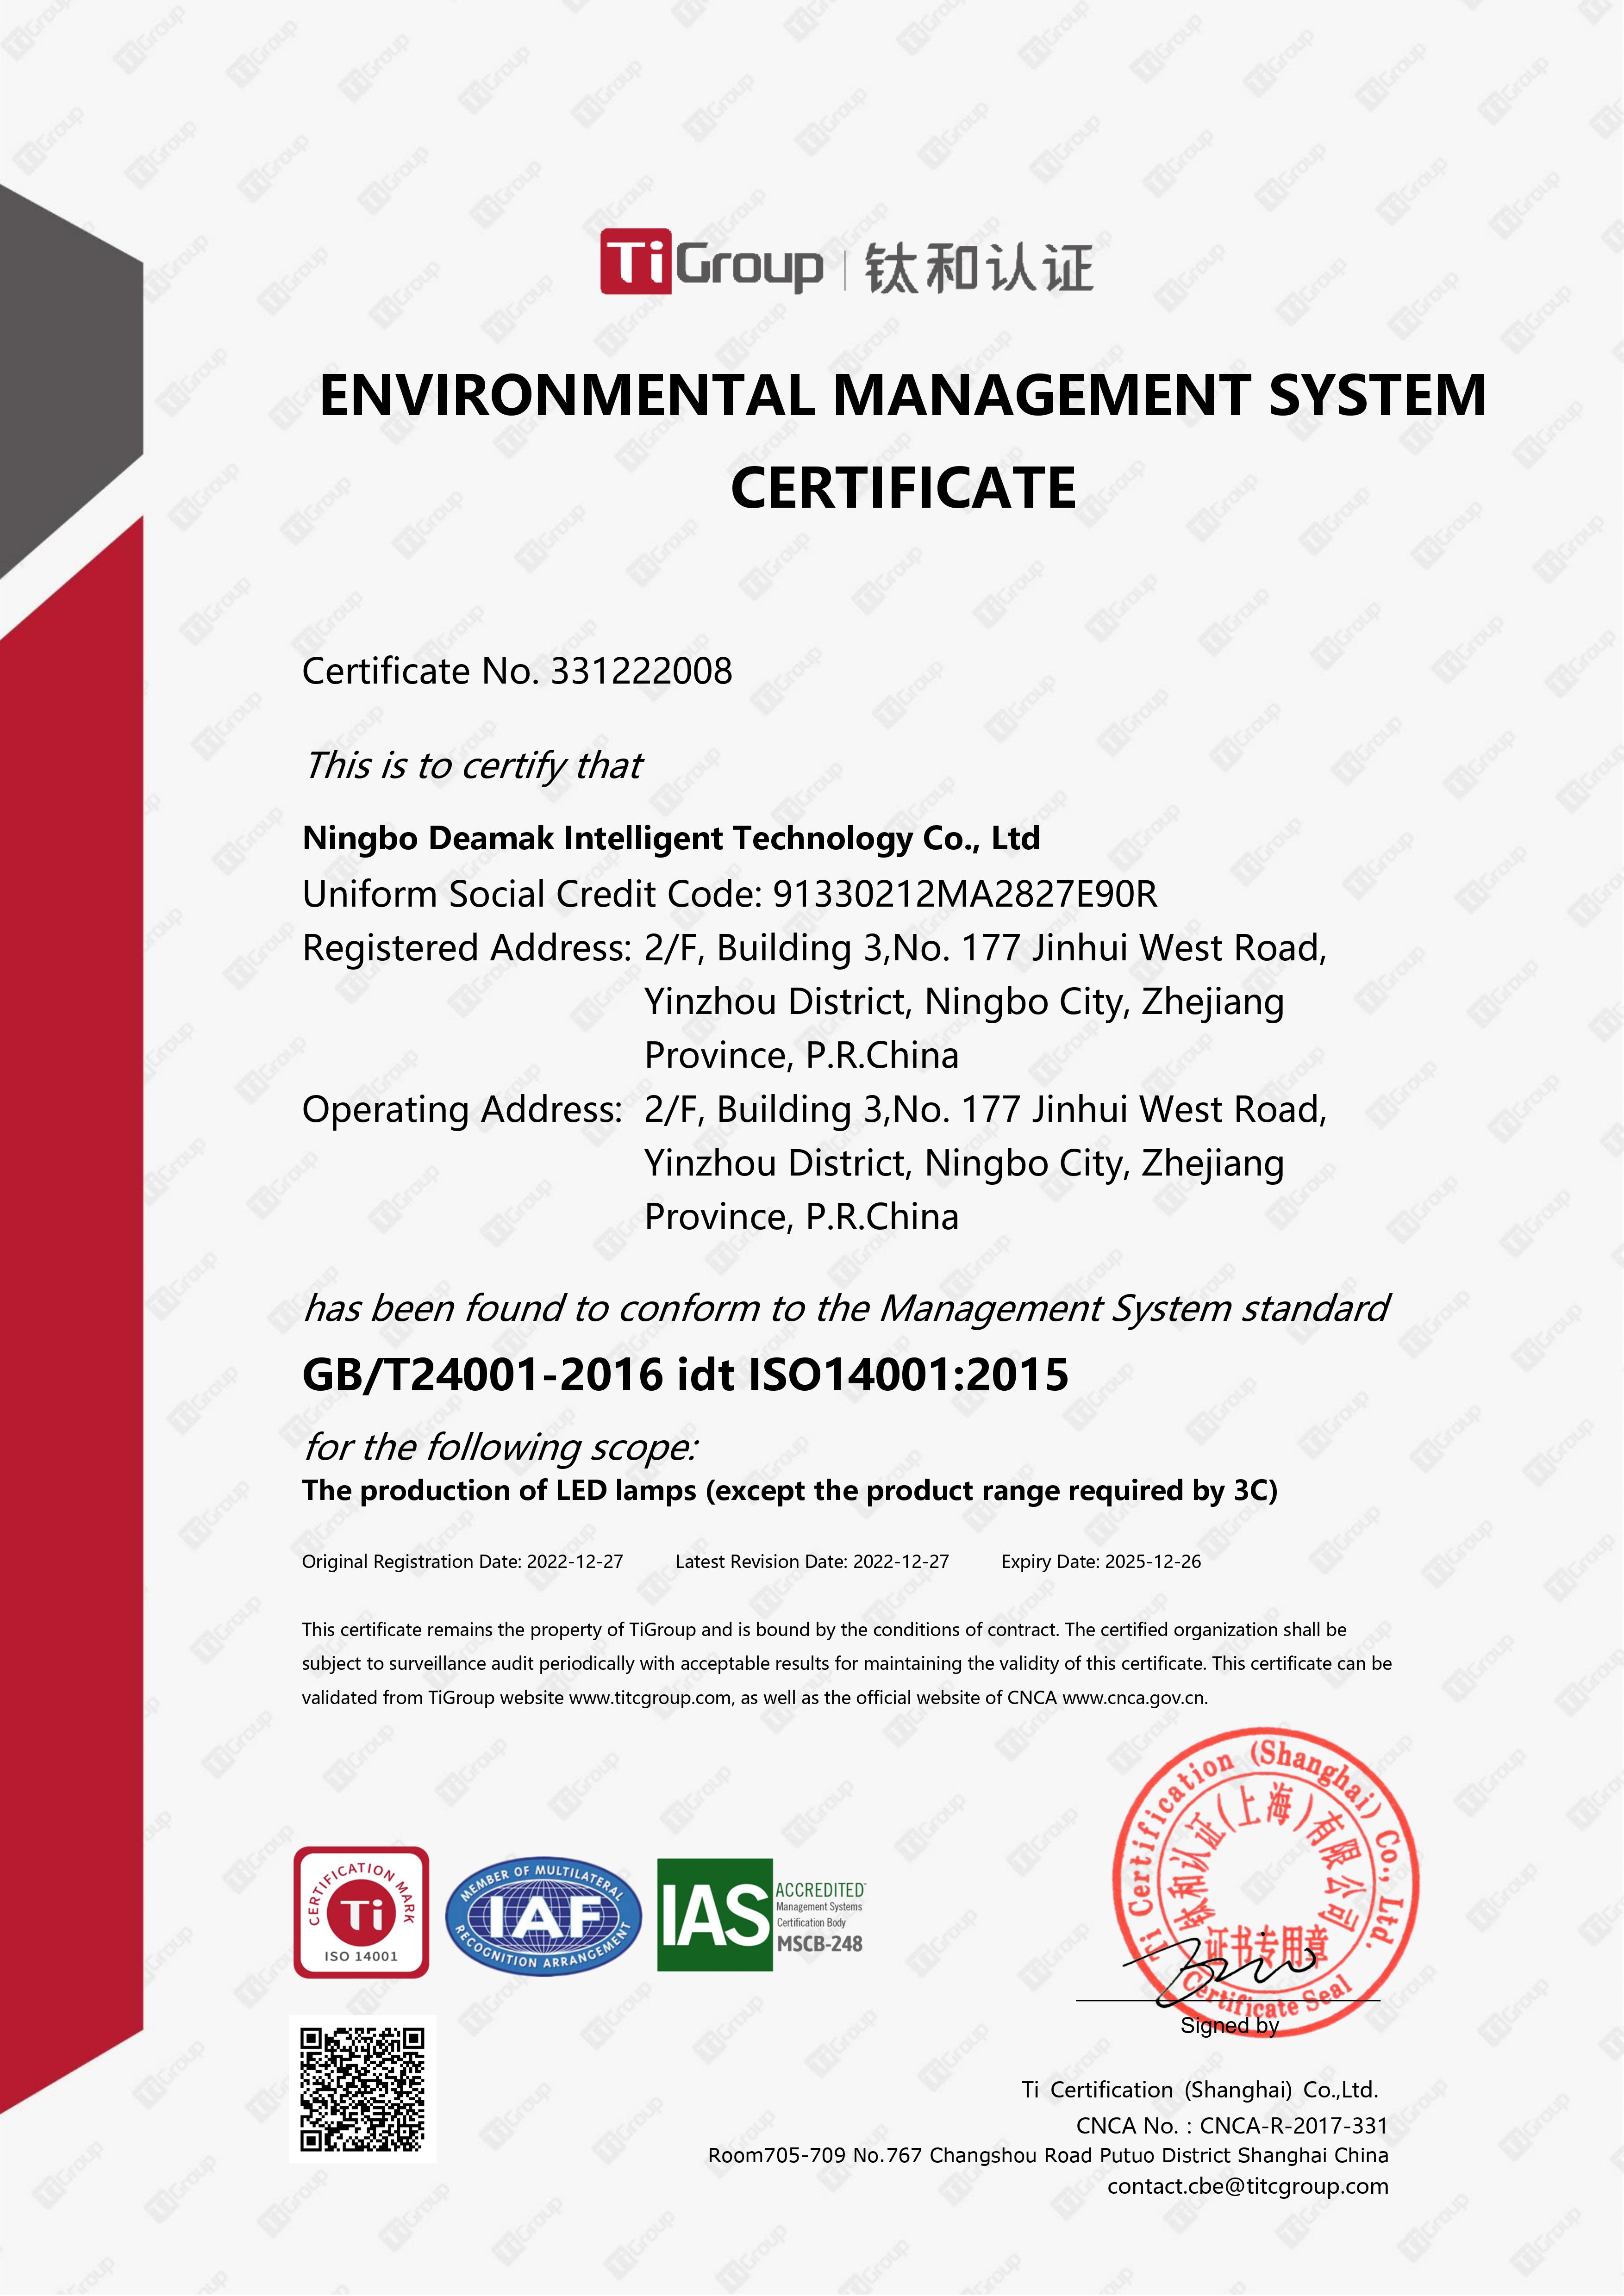 NINGBO Deamak ISO 14001